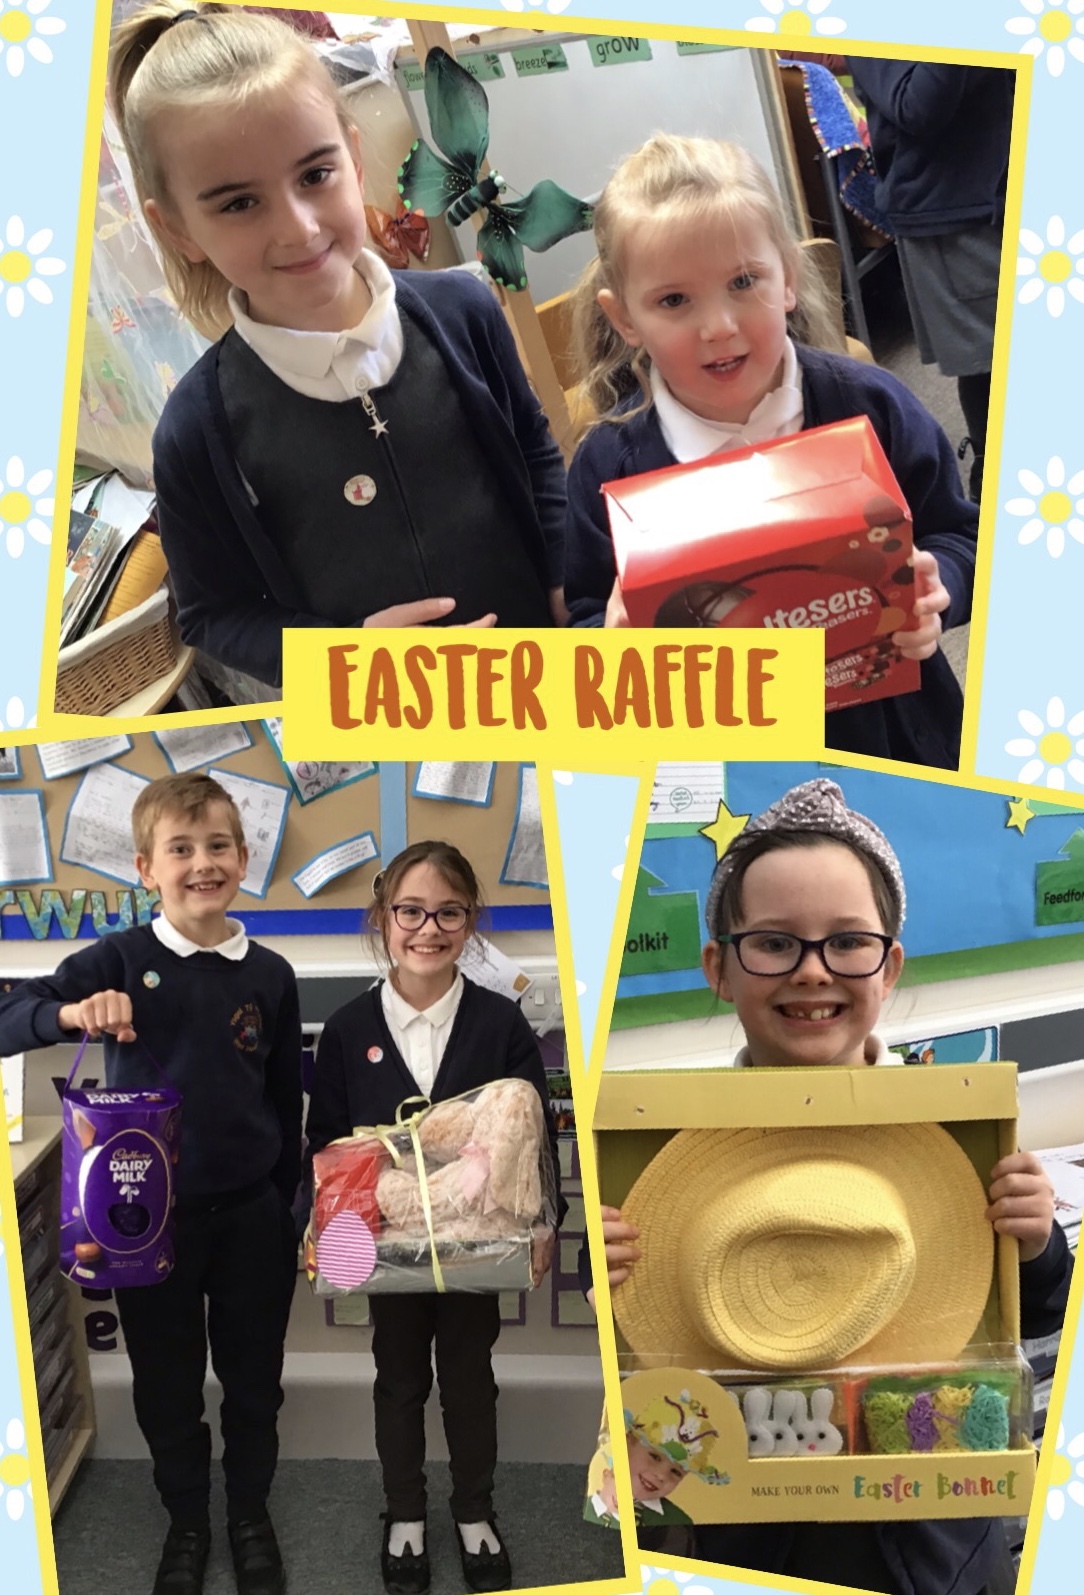 Ysgol T? Ffynnon School Council held an Easter raffle fundraiser.